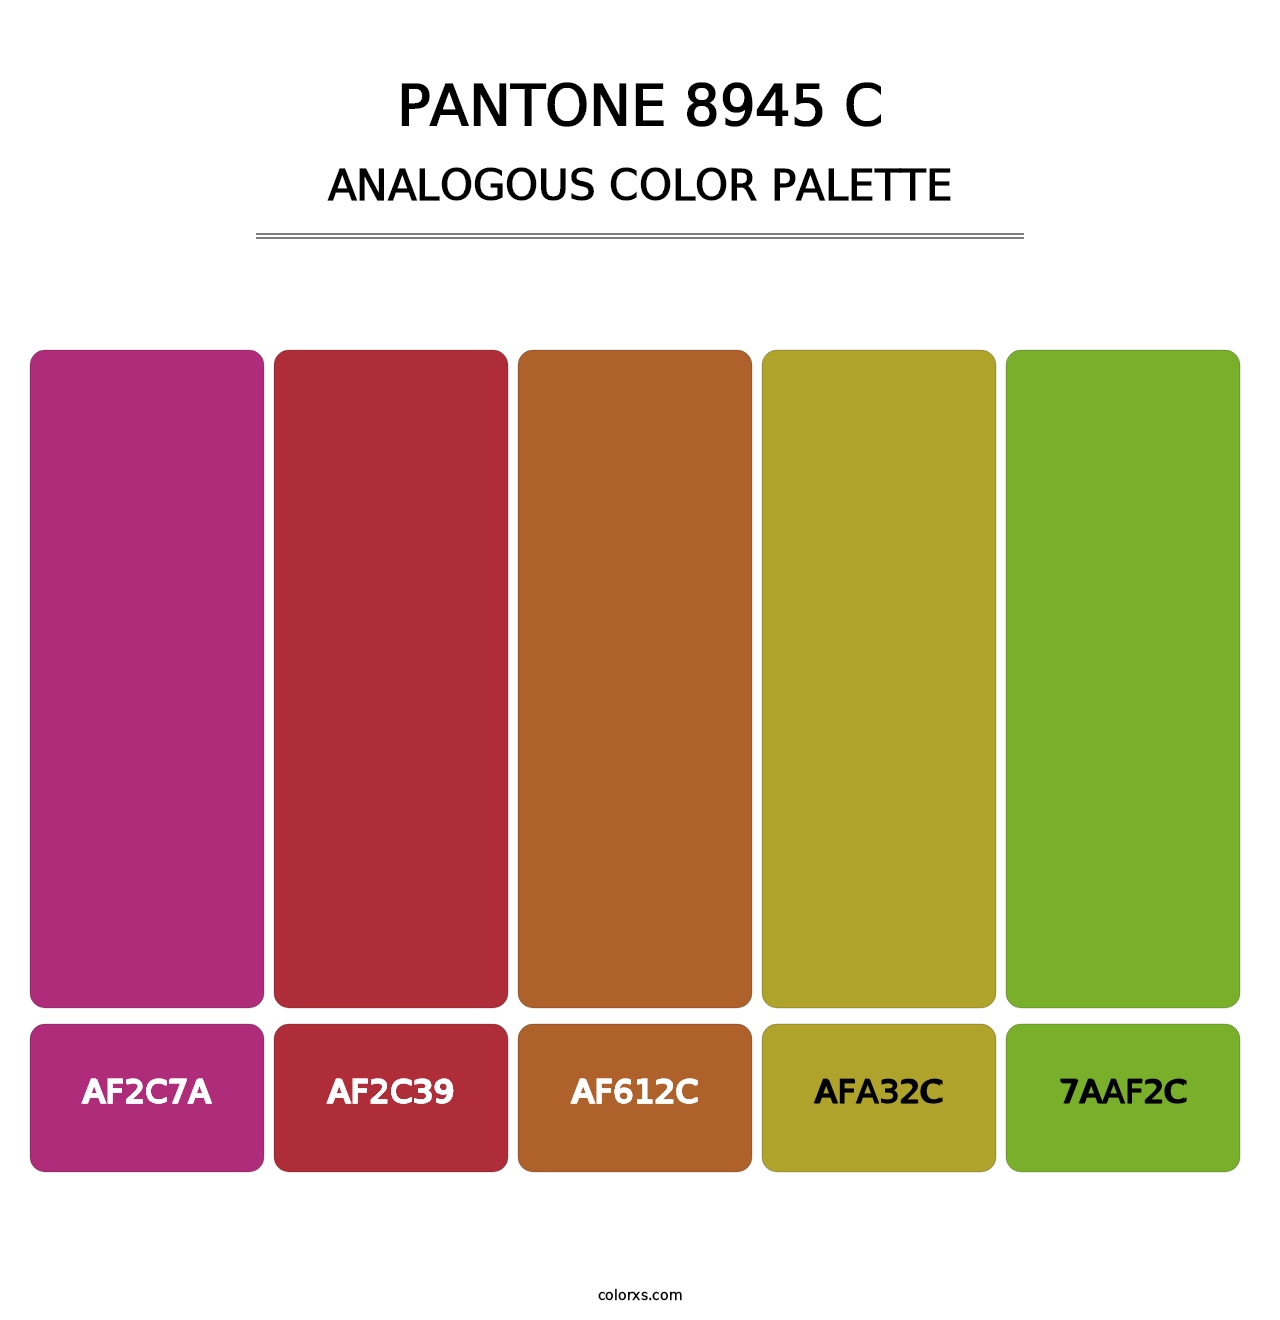 PANTONE 8945 C - Analogous Color Palette